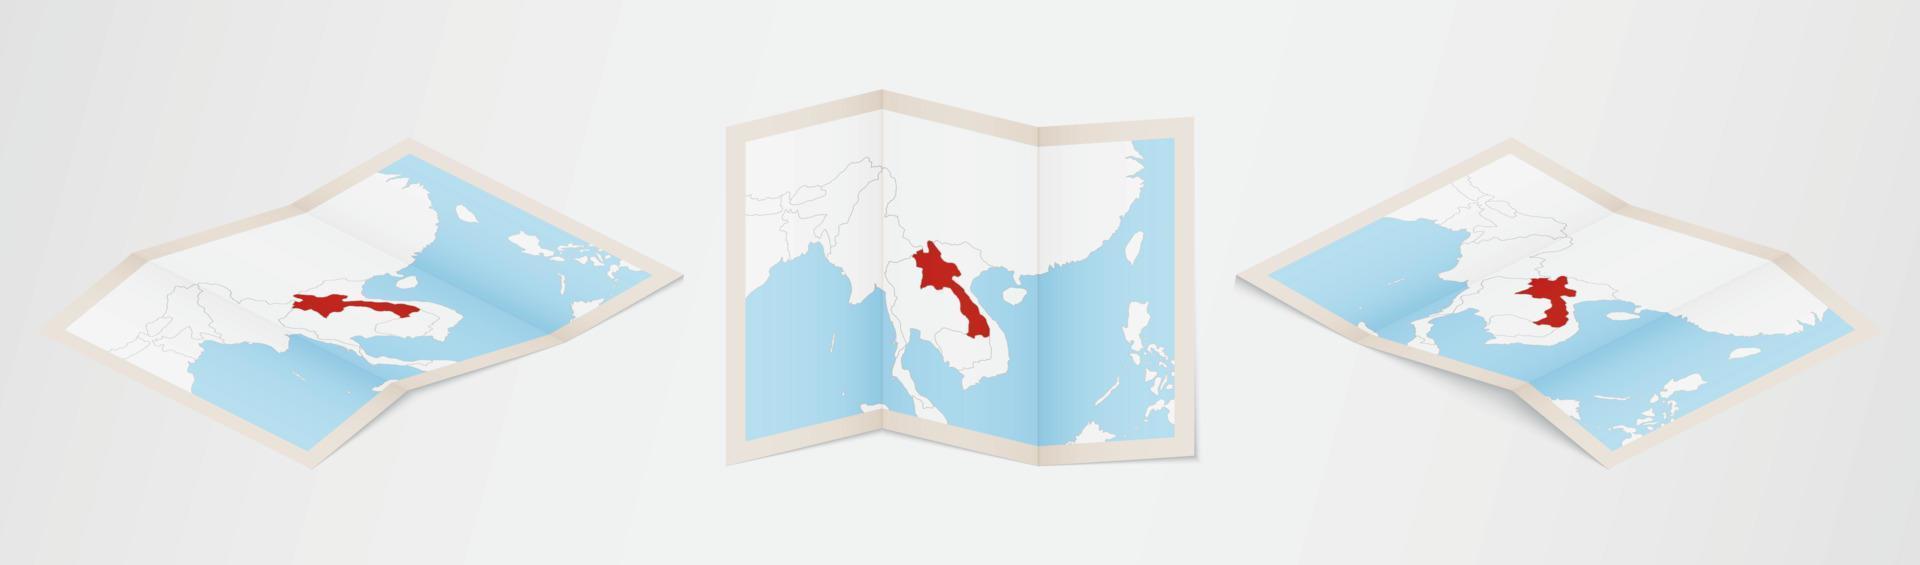 Faltkarte von Laos in drei verschiedenen Versionen. vektor